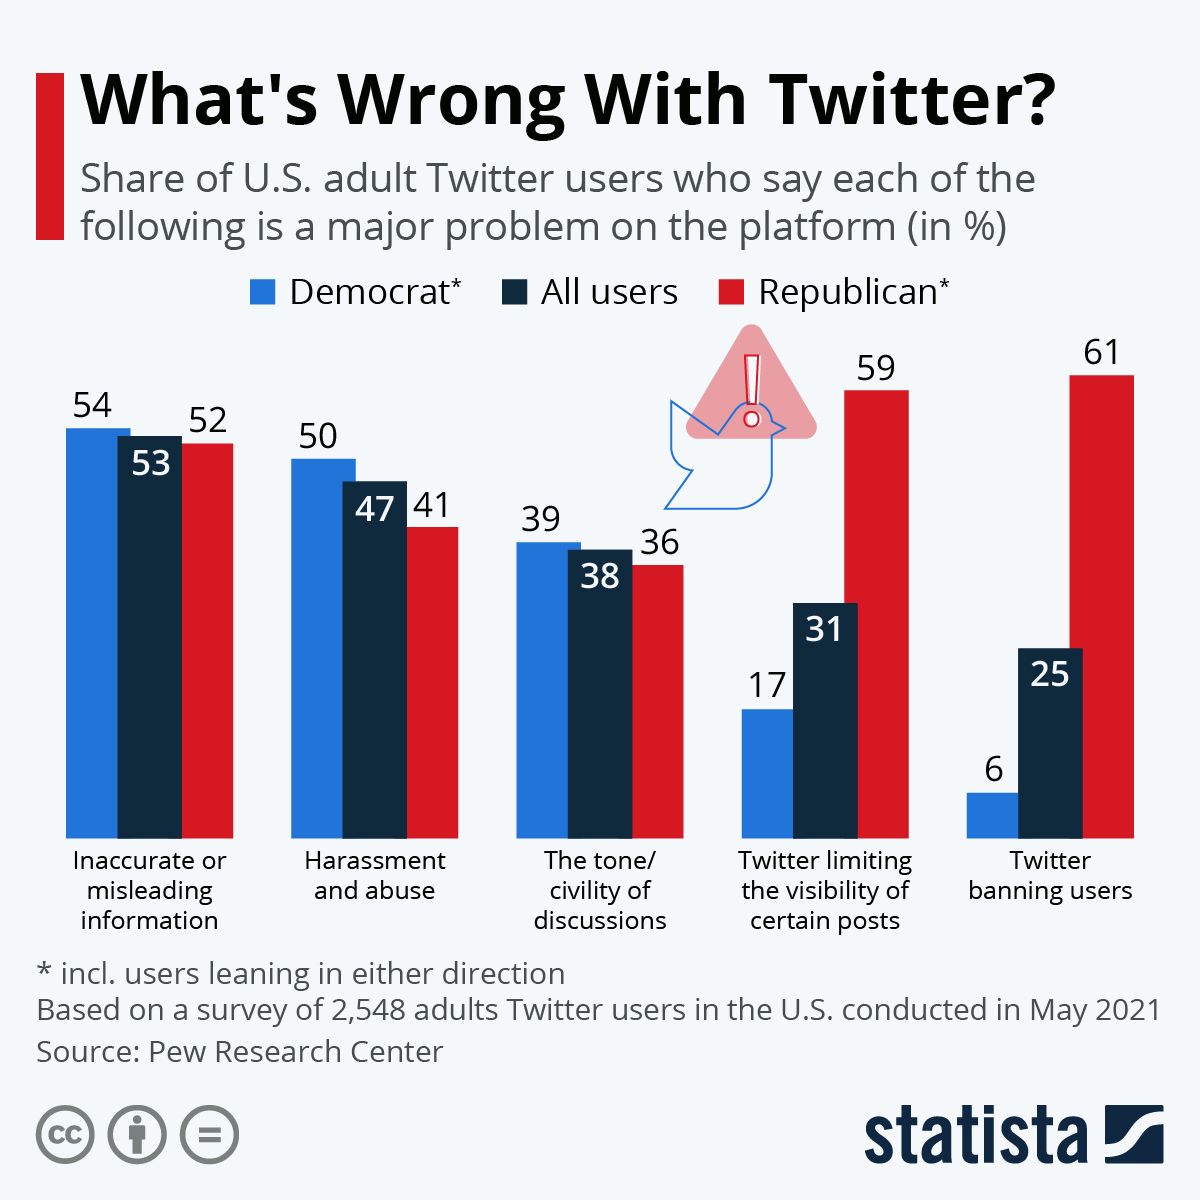 Инфографика: что не так с Twitter?  |  Статистика